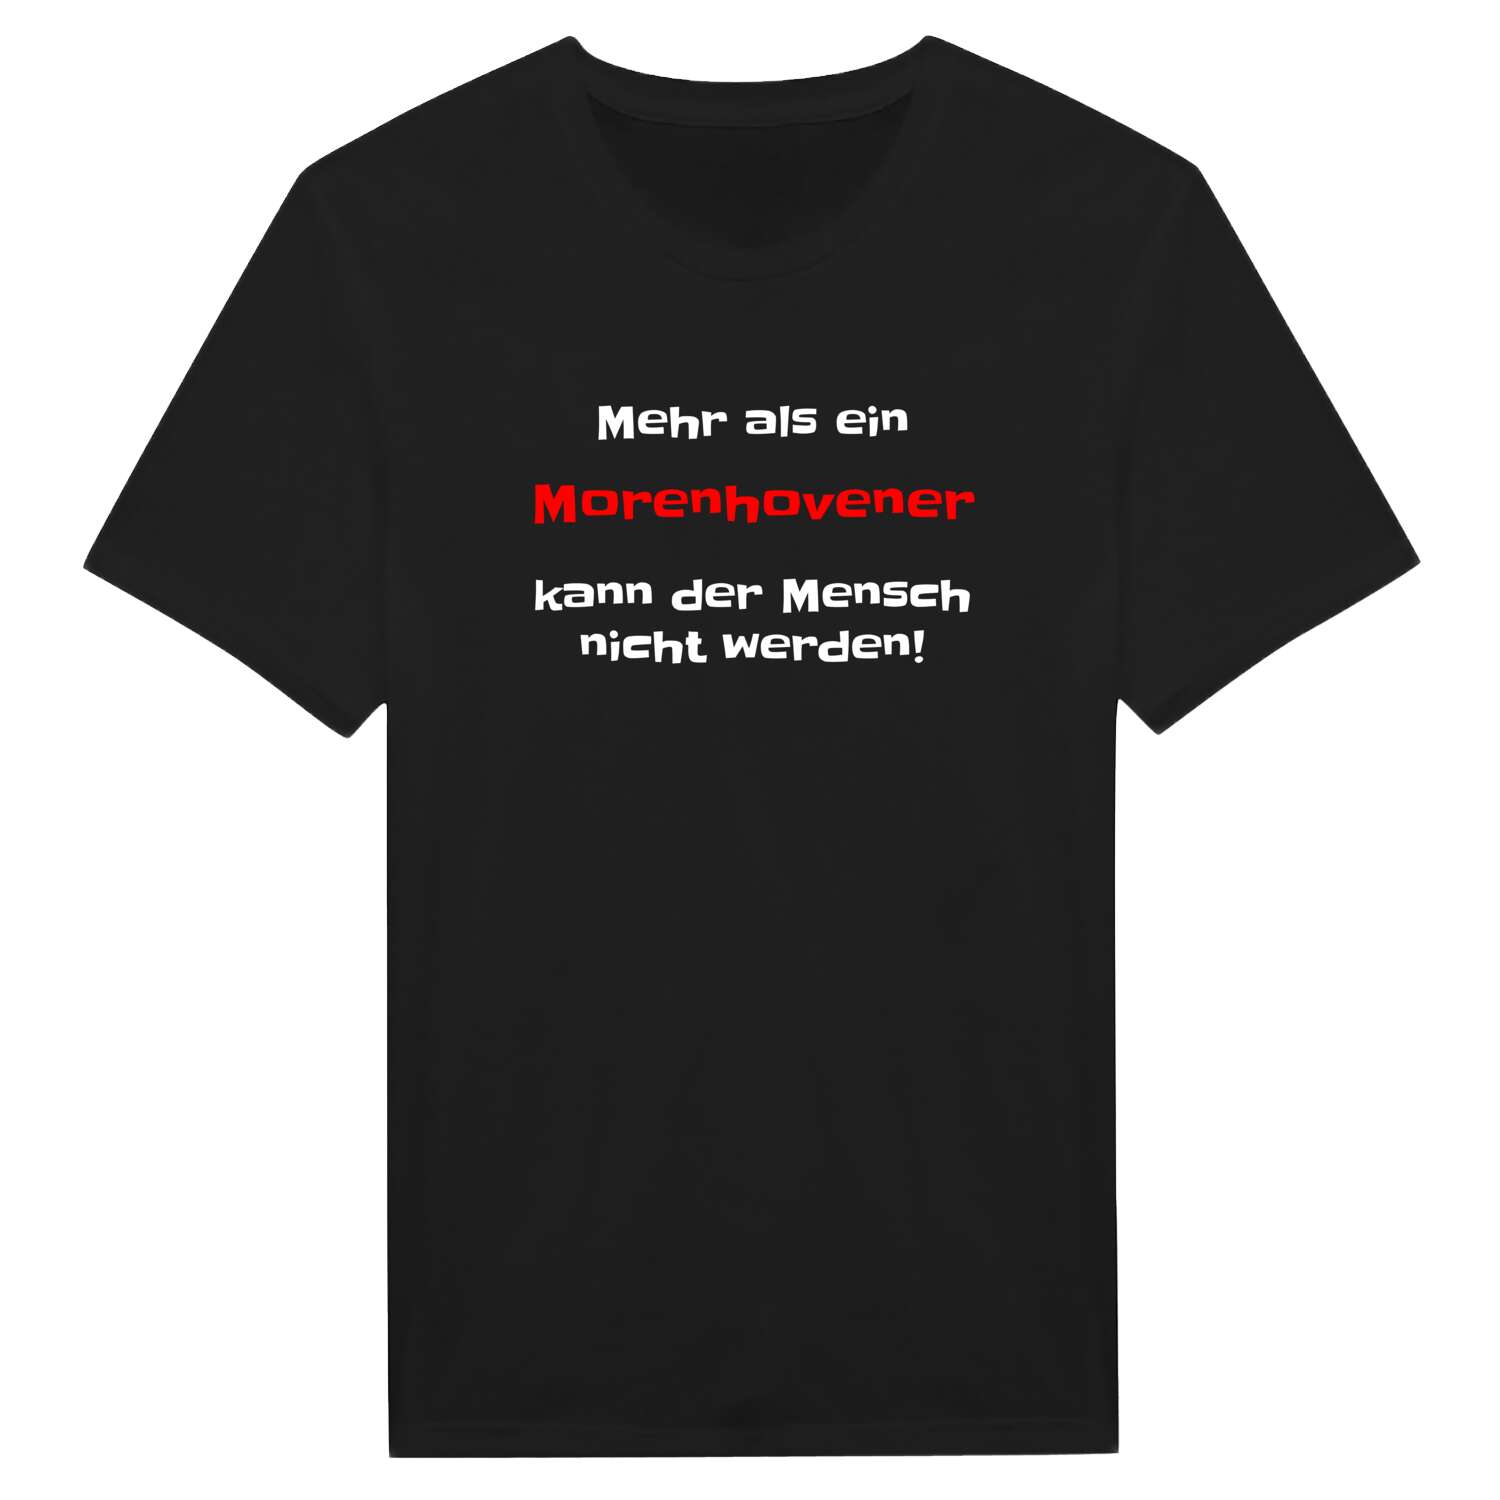 Morenhoven T-Shirt »Mehr als ein«